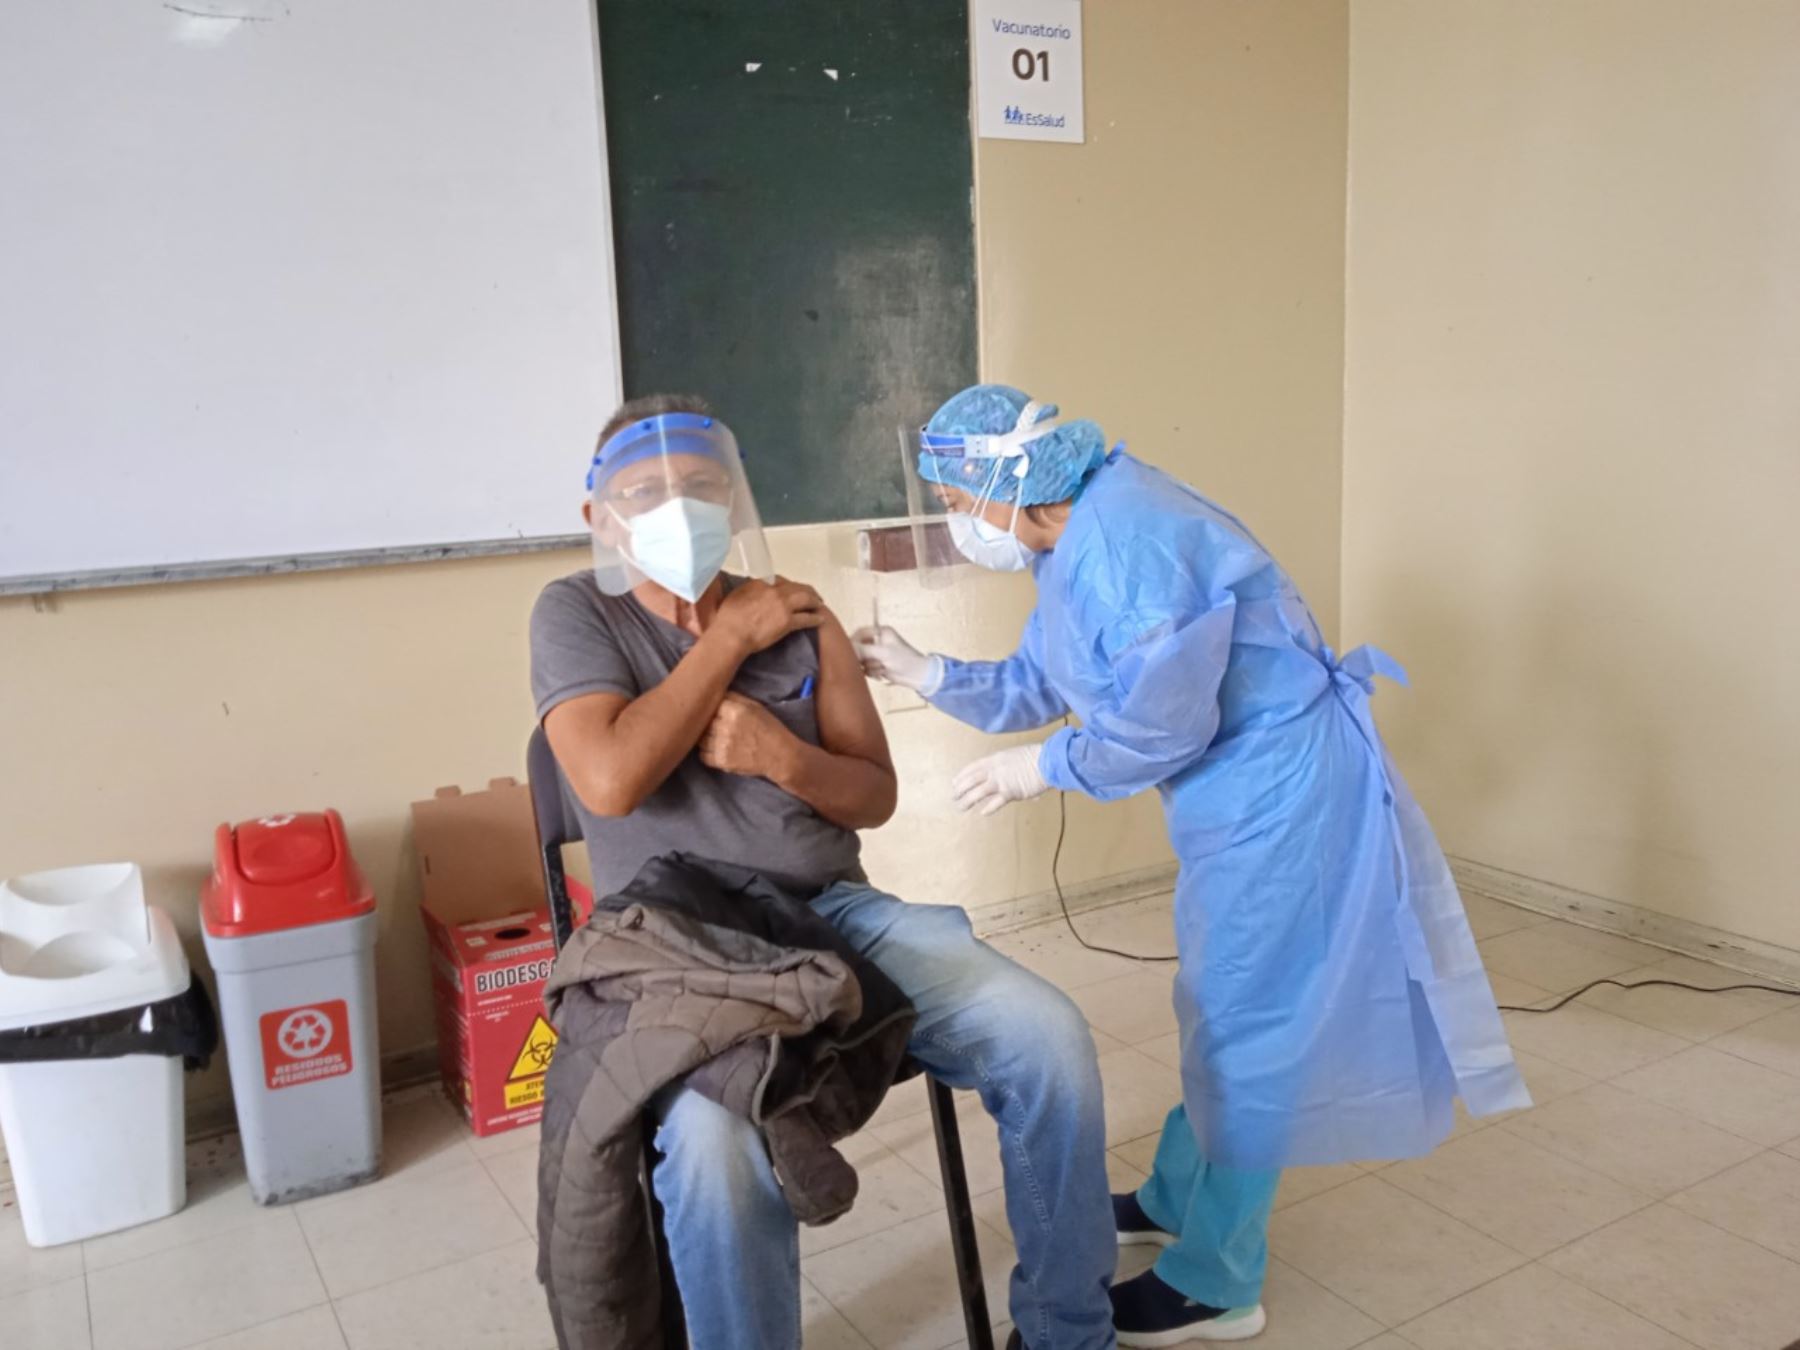 La Libertad estima que más de 140,000 personas deben recibir la segunda dosis de vacuna contra la covid-19. Fotos: Vanessa Graos Garnique.